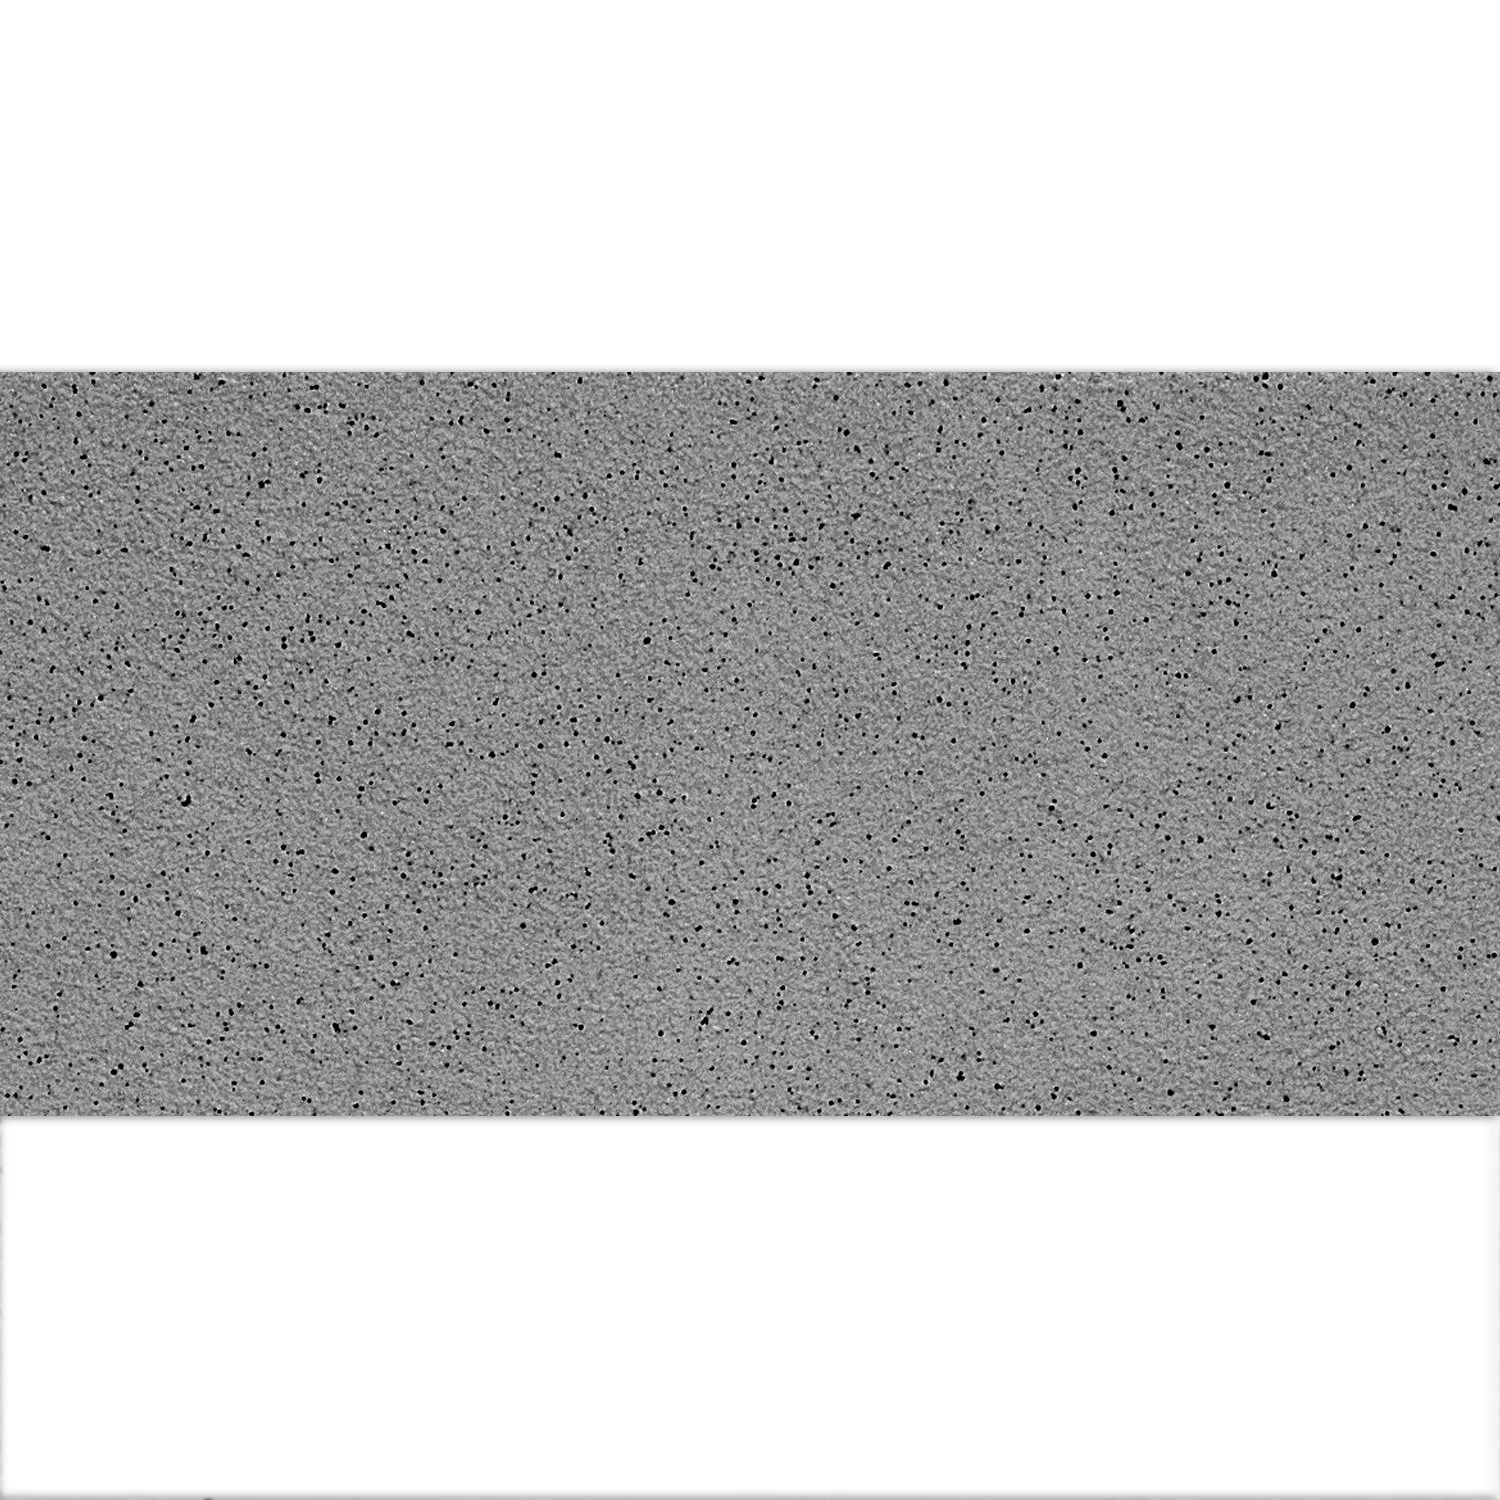 Πρότυπο Πλακάκι Δαπέδου Ψιλό Σιτάρι R10/A Ανθρακίτης 30x60cm